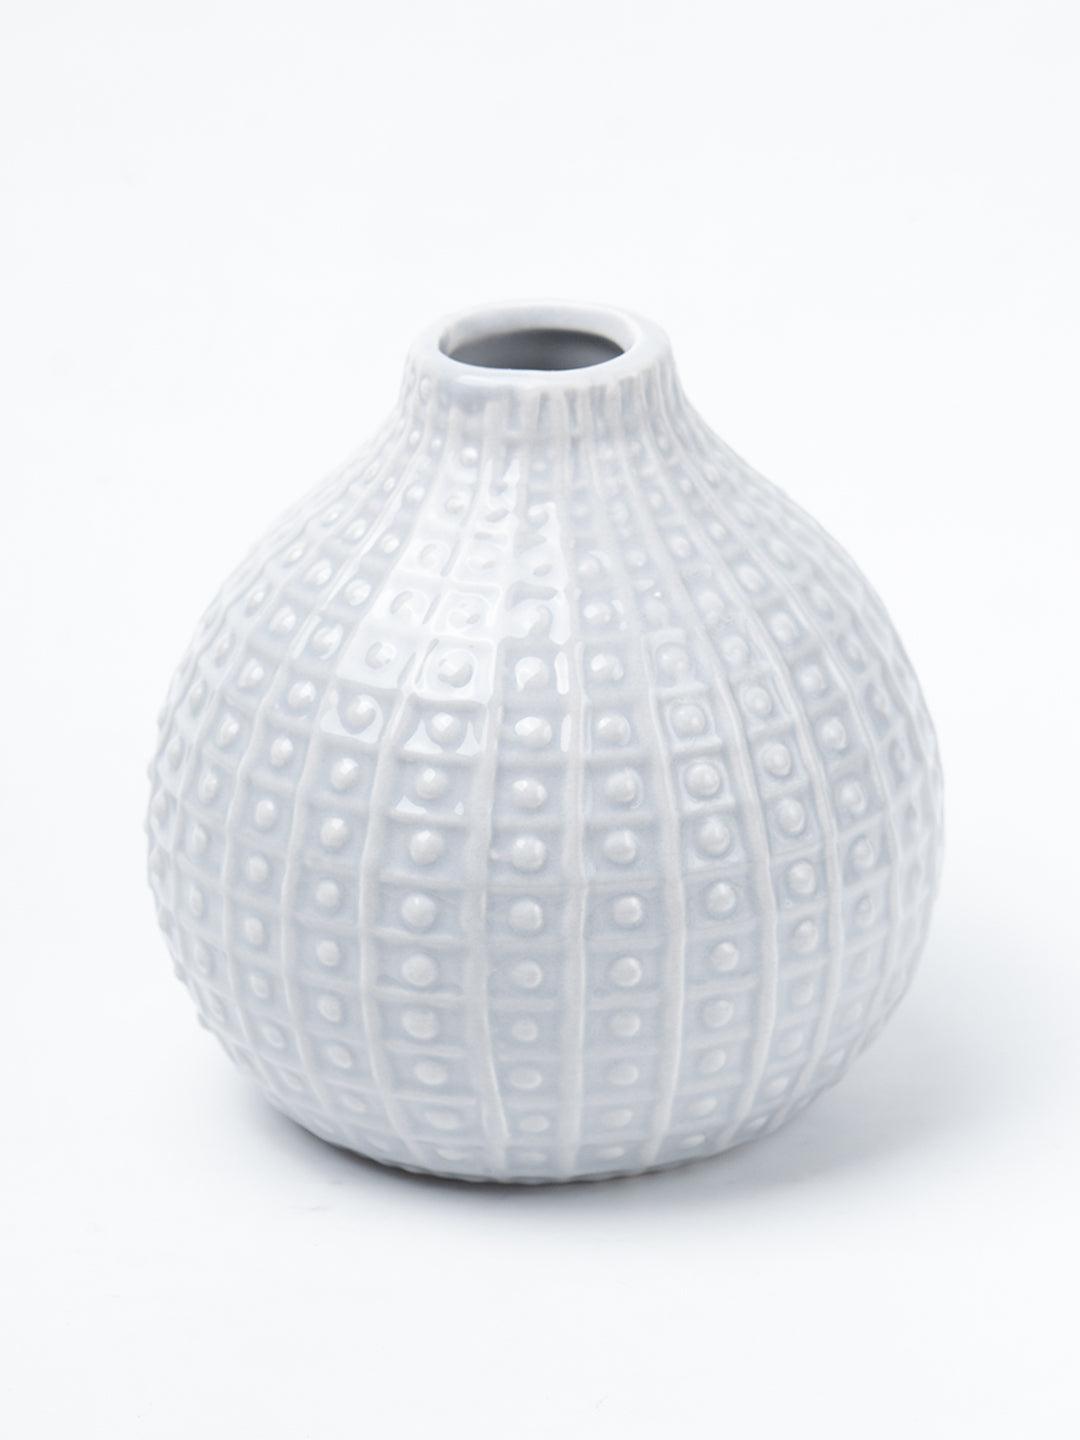 Grey Ceramic Vase - Textured Pattern, Flower Holder - 3